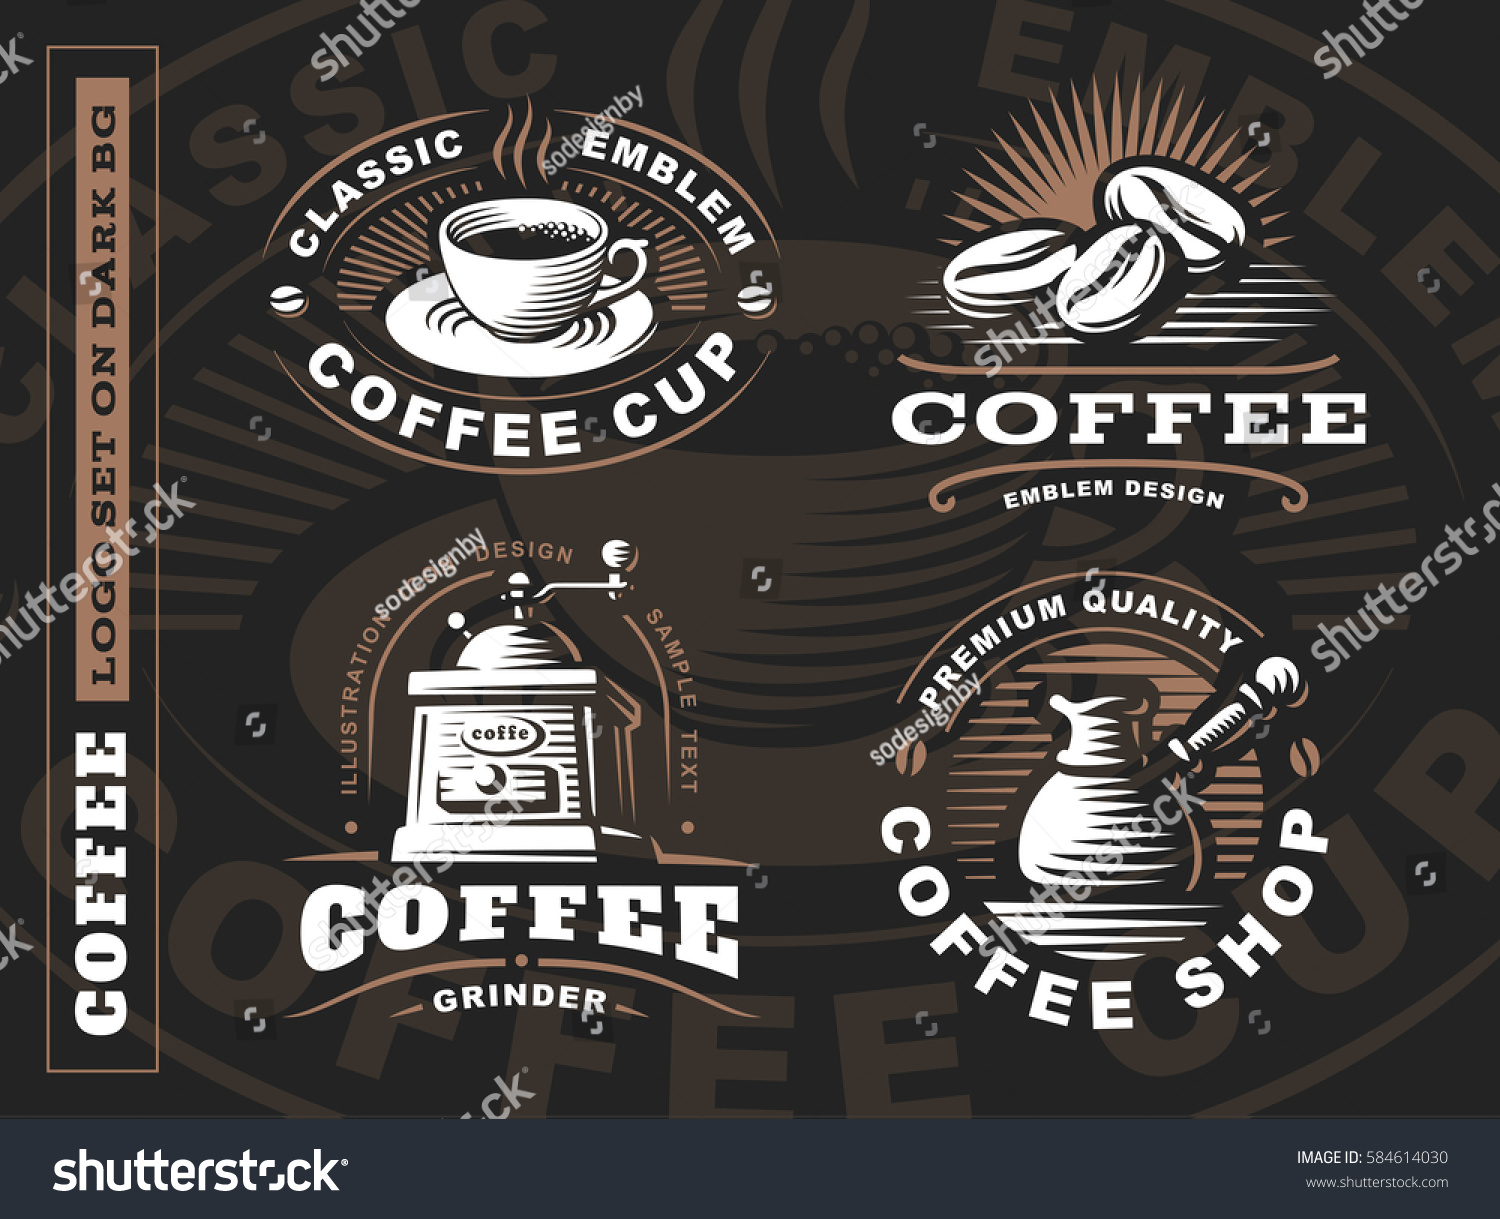 SVG of Coffee logo - vector illustration, emblem set design on black background. svg